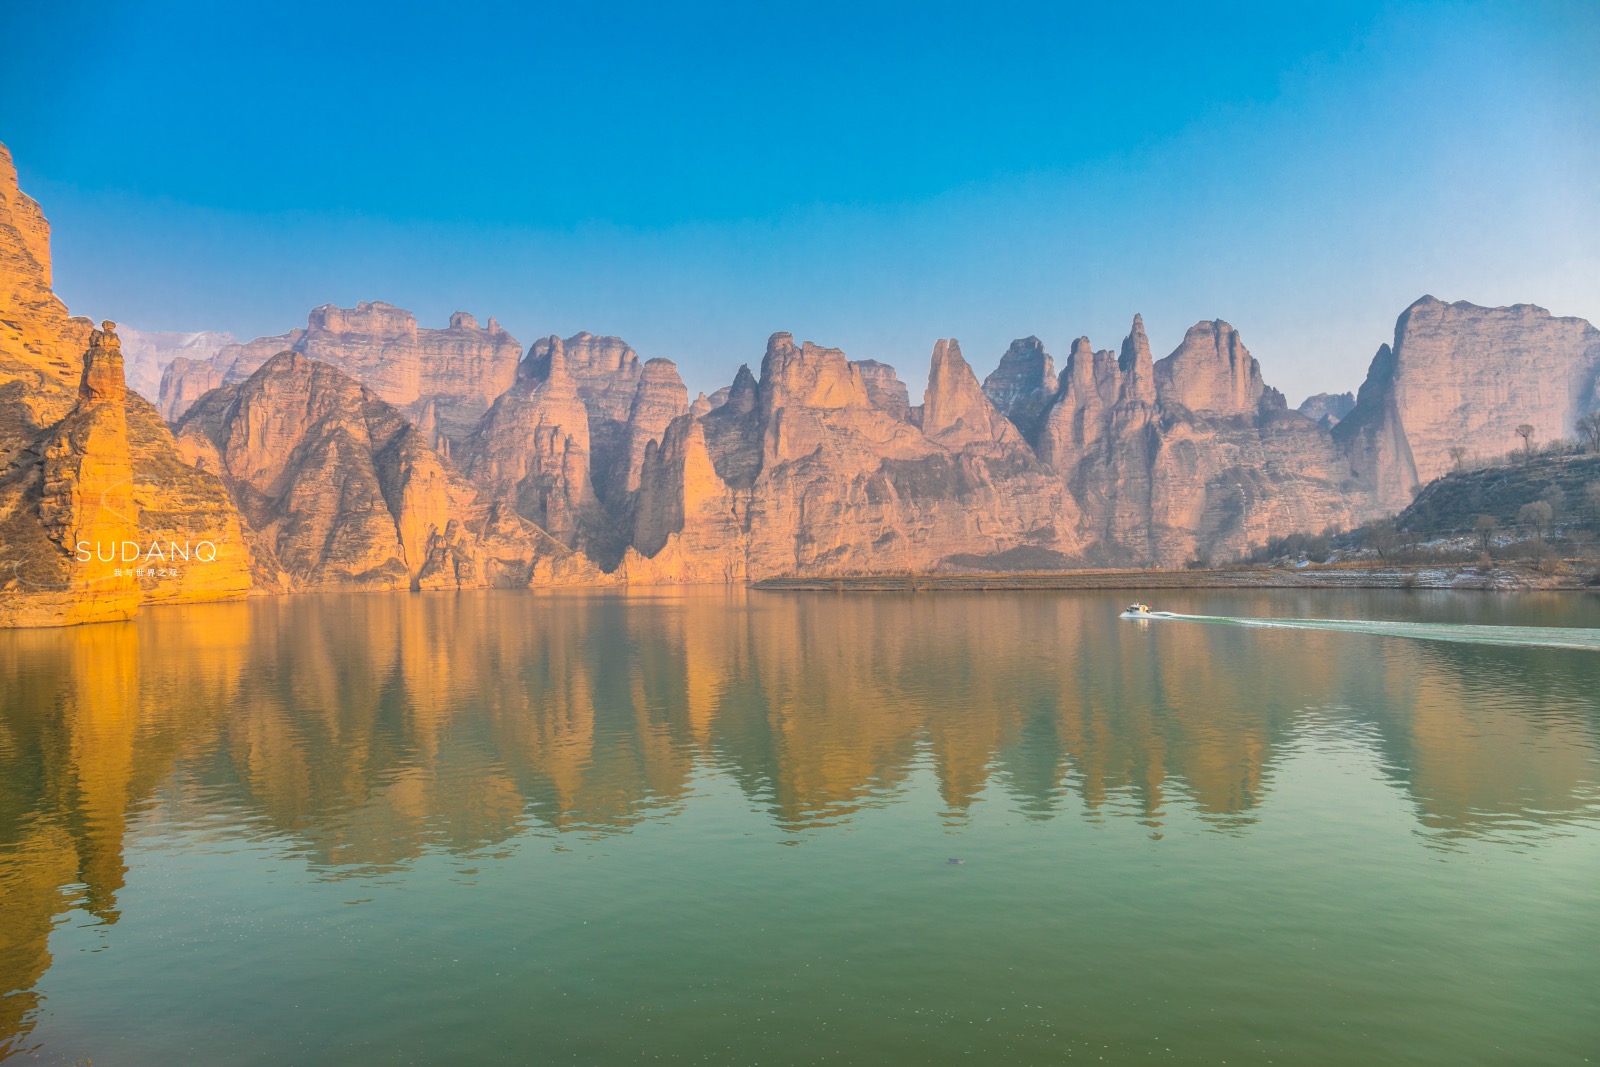 黄河三峡中藏有古迹迄今1600余年堪称中国唯一早期石窟